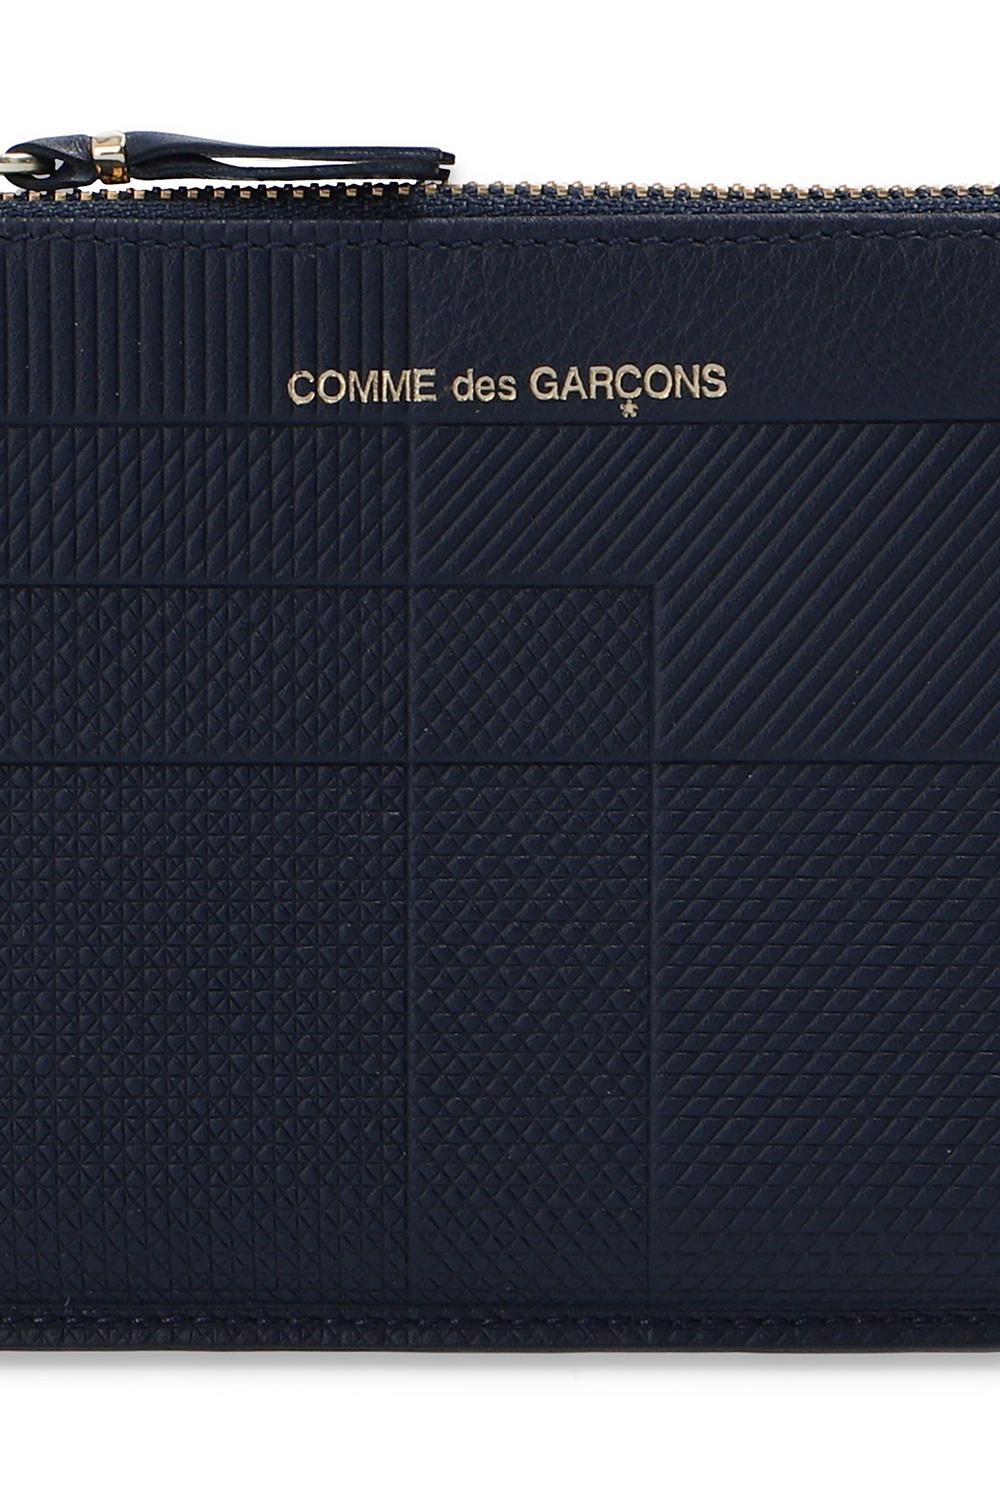 Comme des Garcons Composition / Capacity